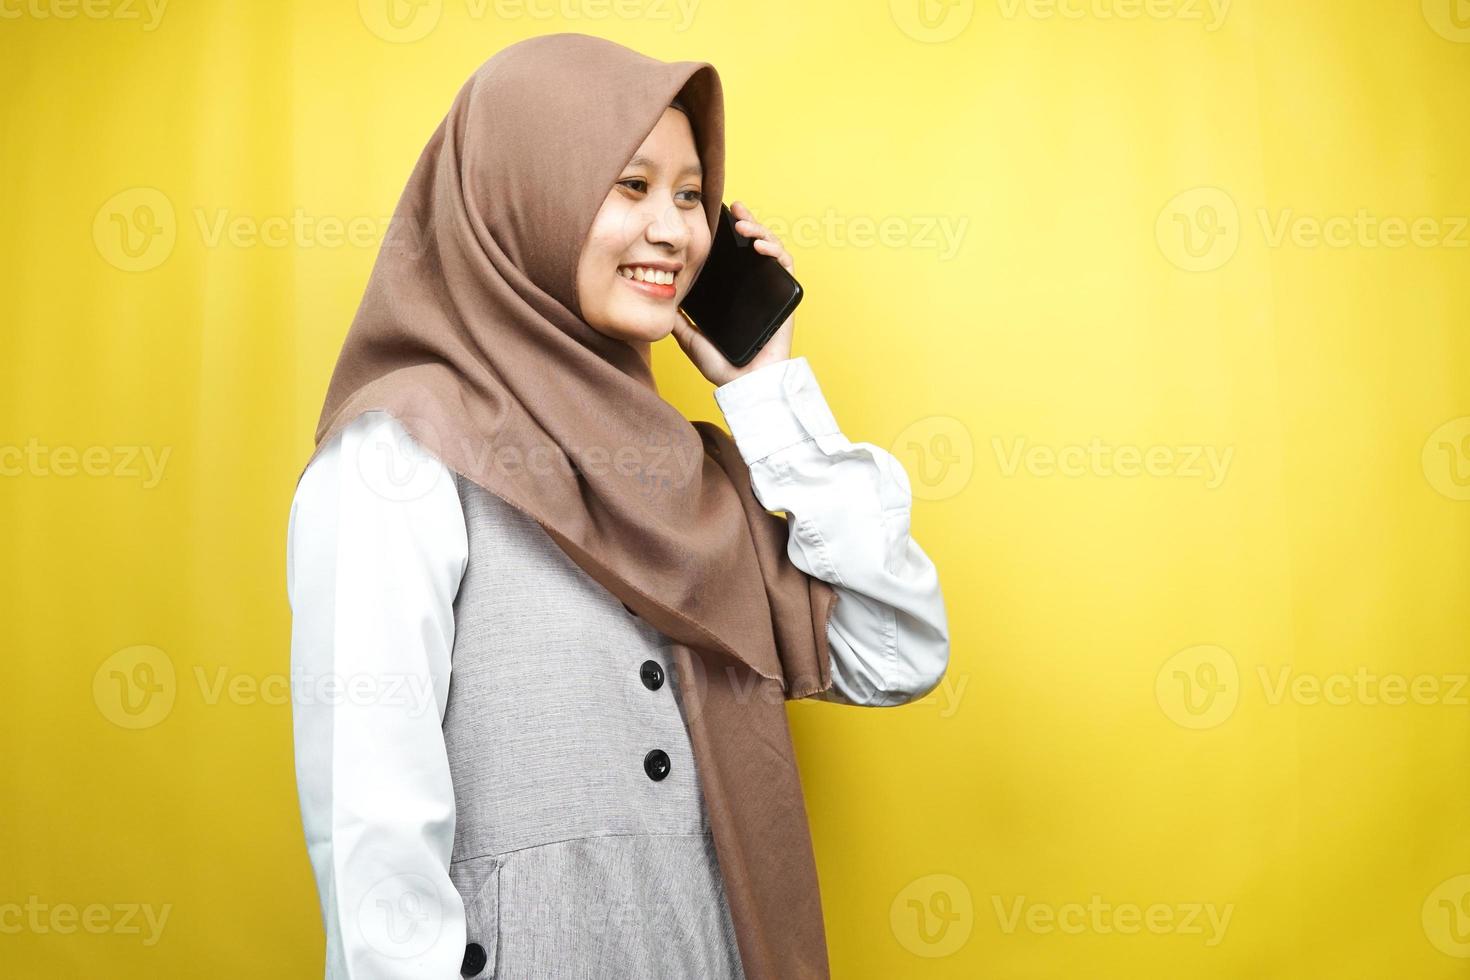 belle jeune femme musulmane asiatique souriante avec confiance et appelant joyeusement quelqu'un, face à un espace vide, isolée sur fond jaune, concept publicitaire photo